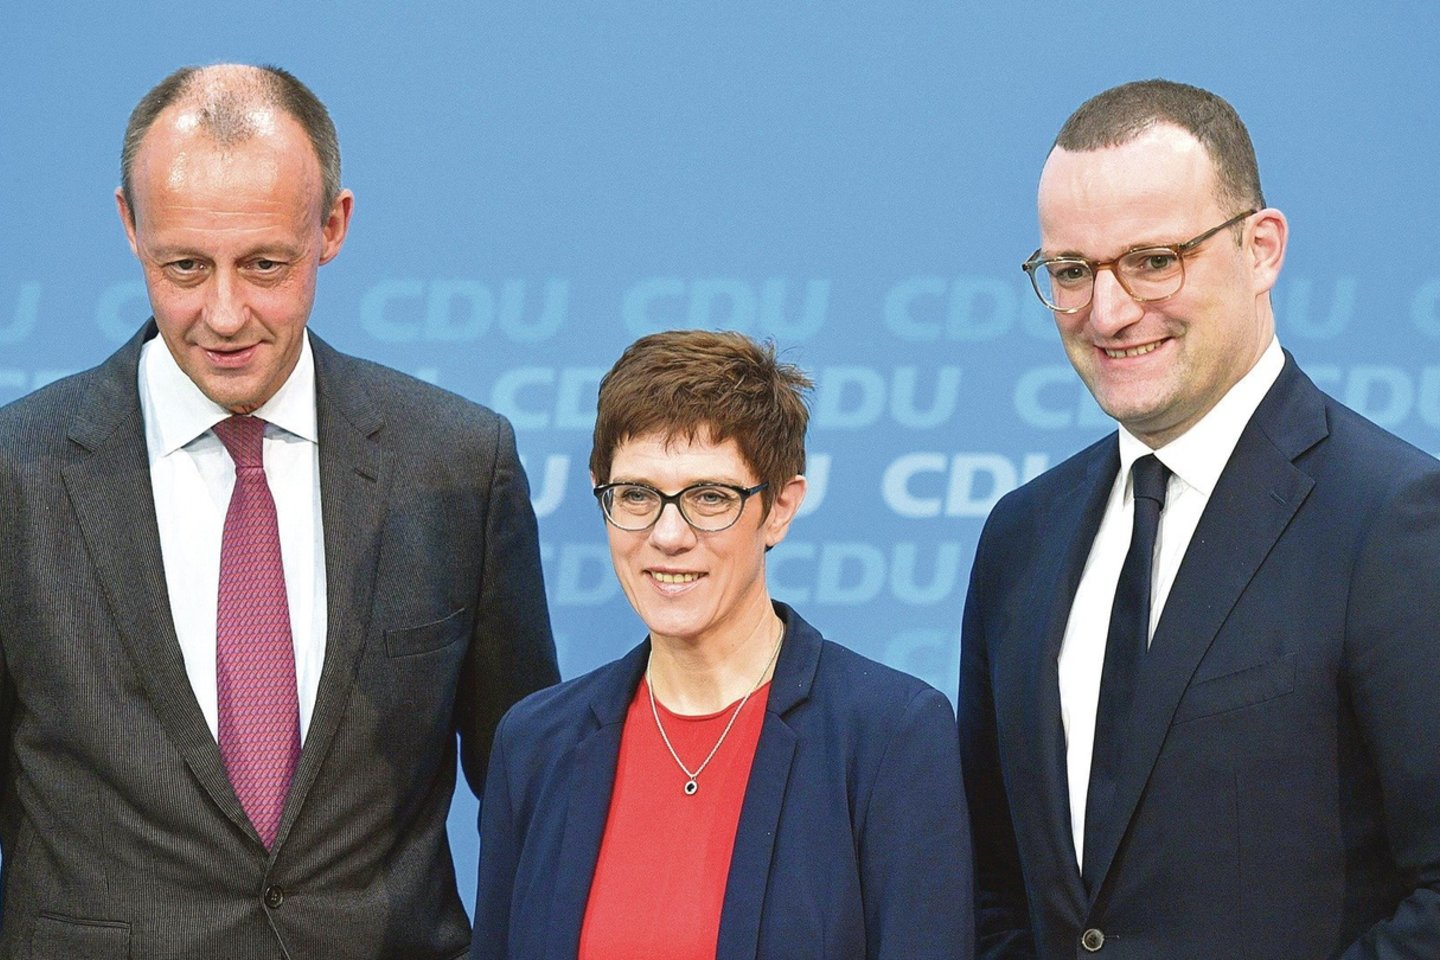 Šiandien į A.Merkel vietą pretenduojantys F.Merzas (nuotr. kairėje) ir J.Spahnas kanclerę kritikuoja. O A.Kramp-Karrenbauer greičiausiai pratęstų jos politiką.<br>AFP/„Scanpix“ nuotr.